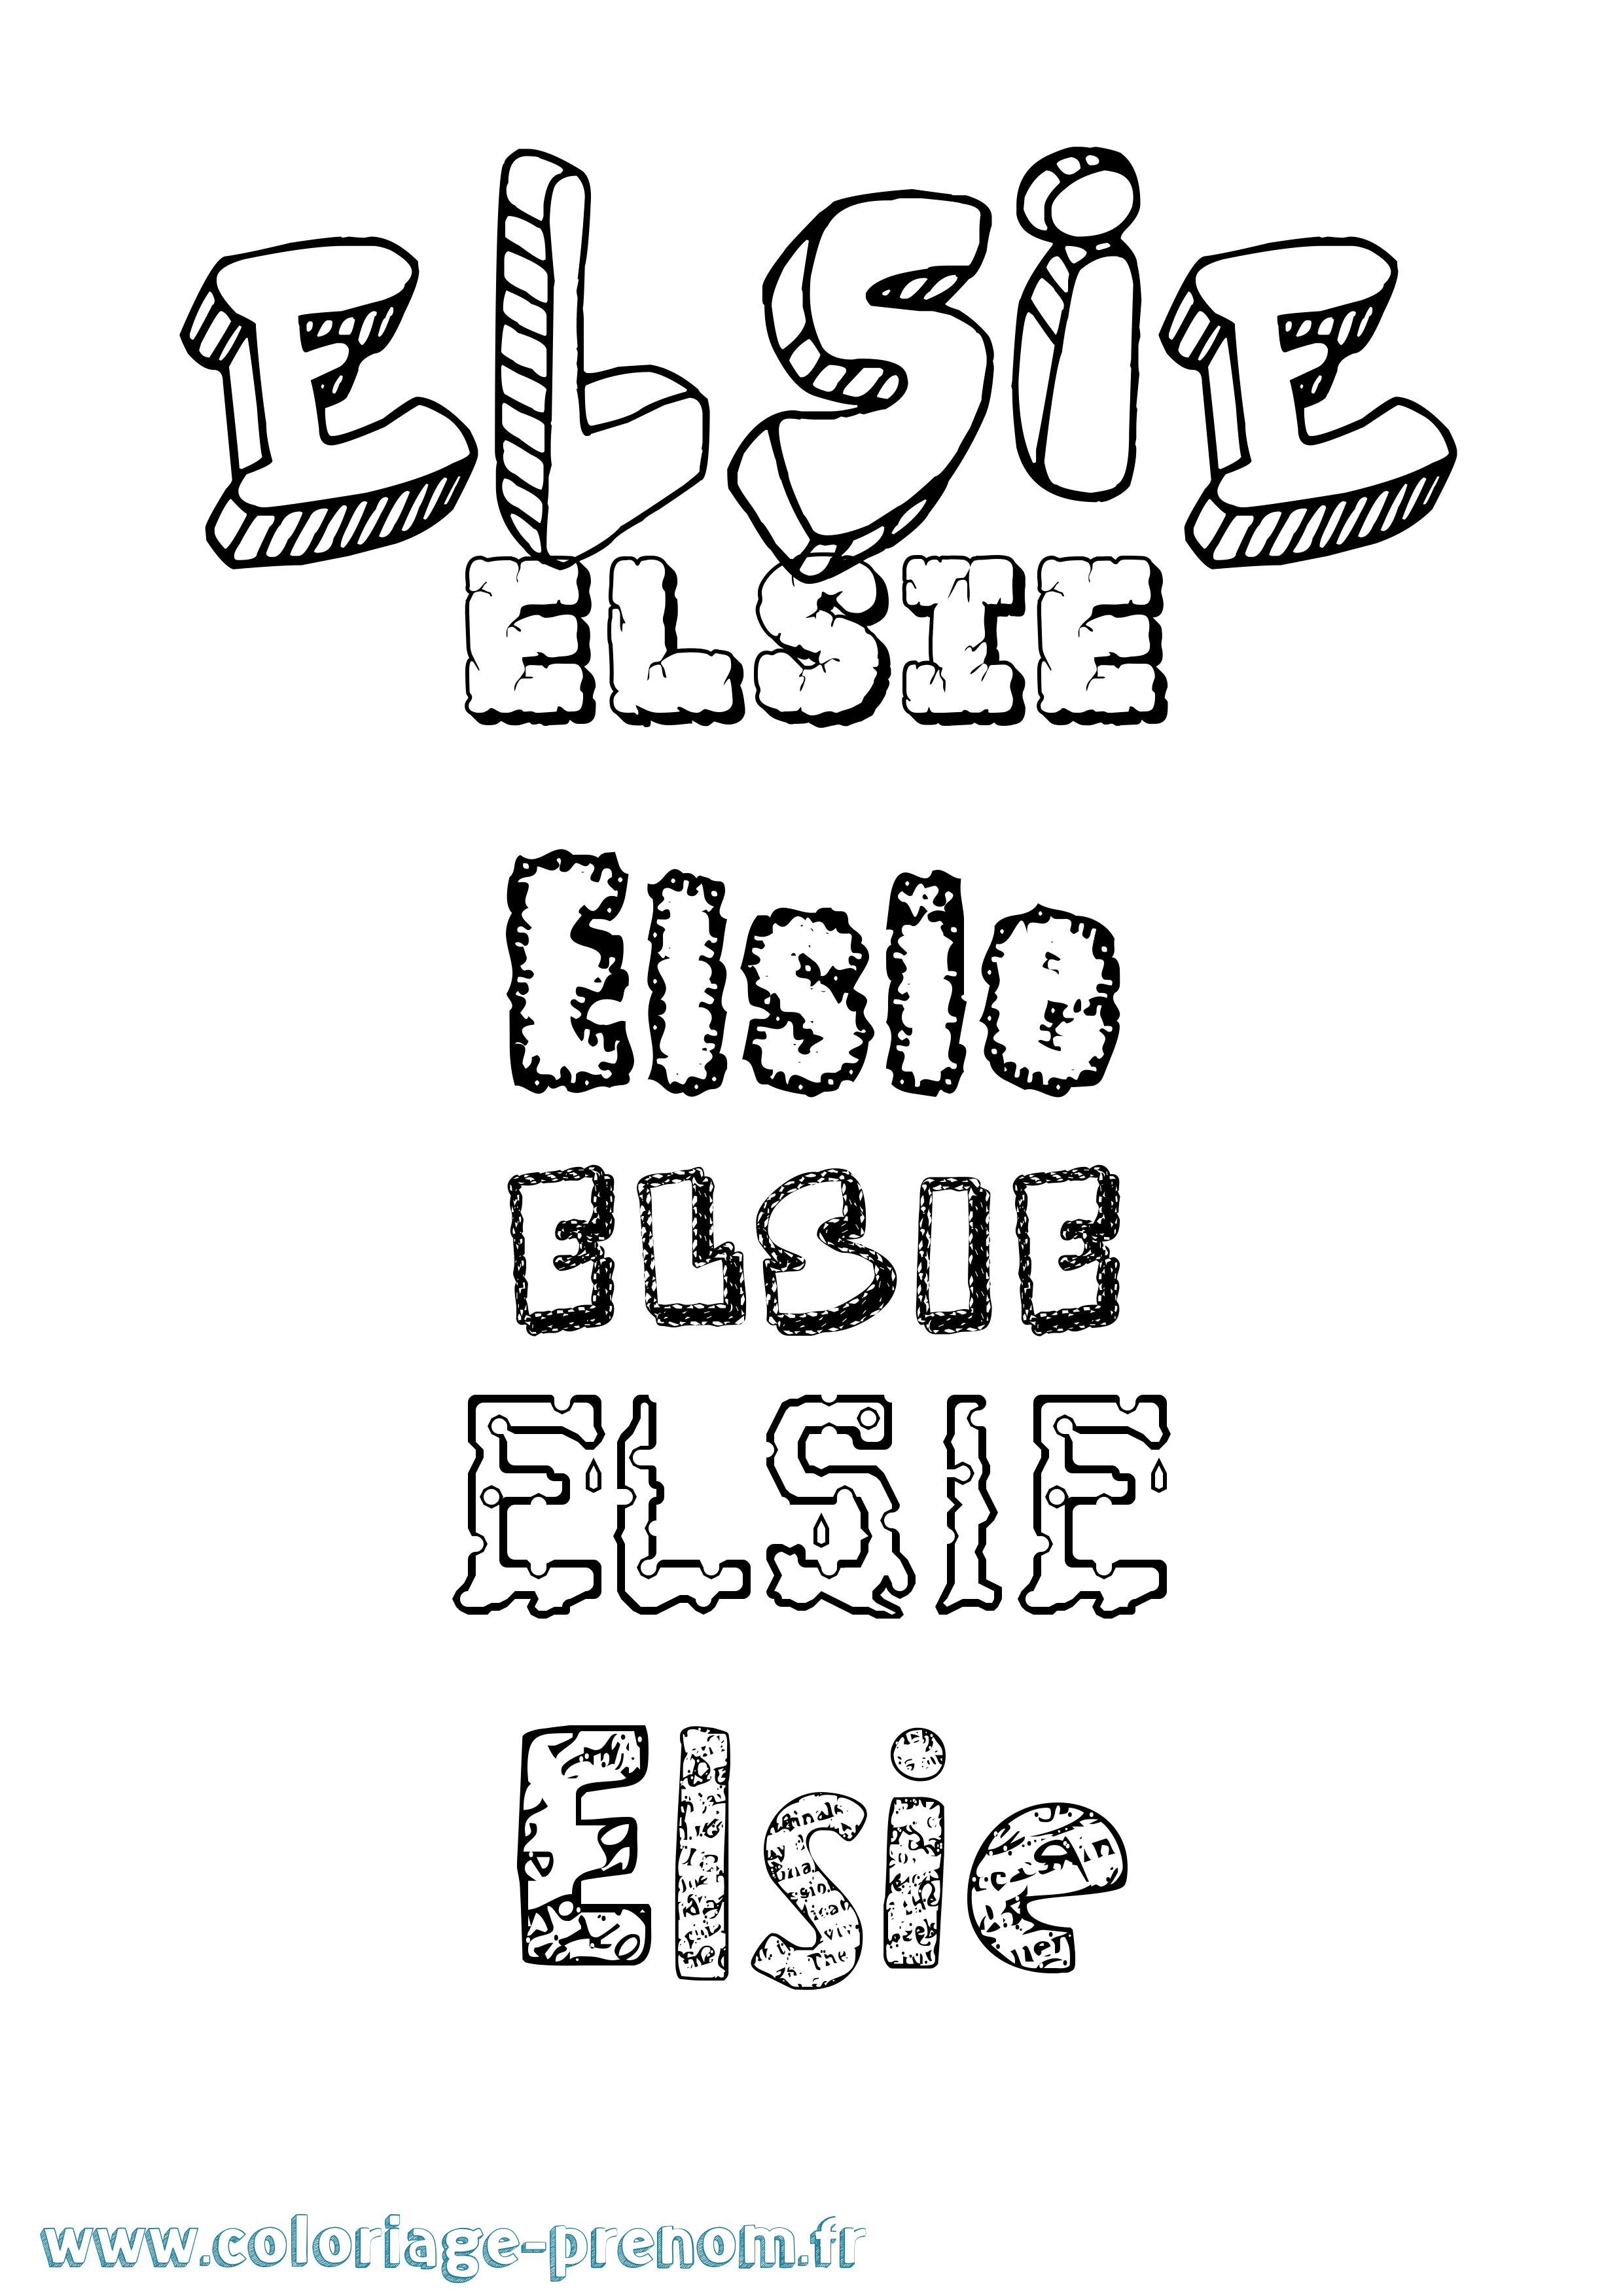 Coloriage prénom Elsie Destructuré